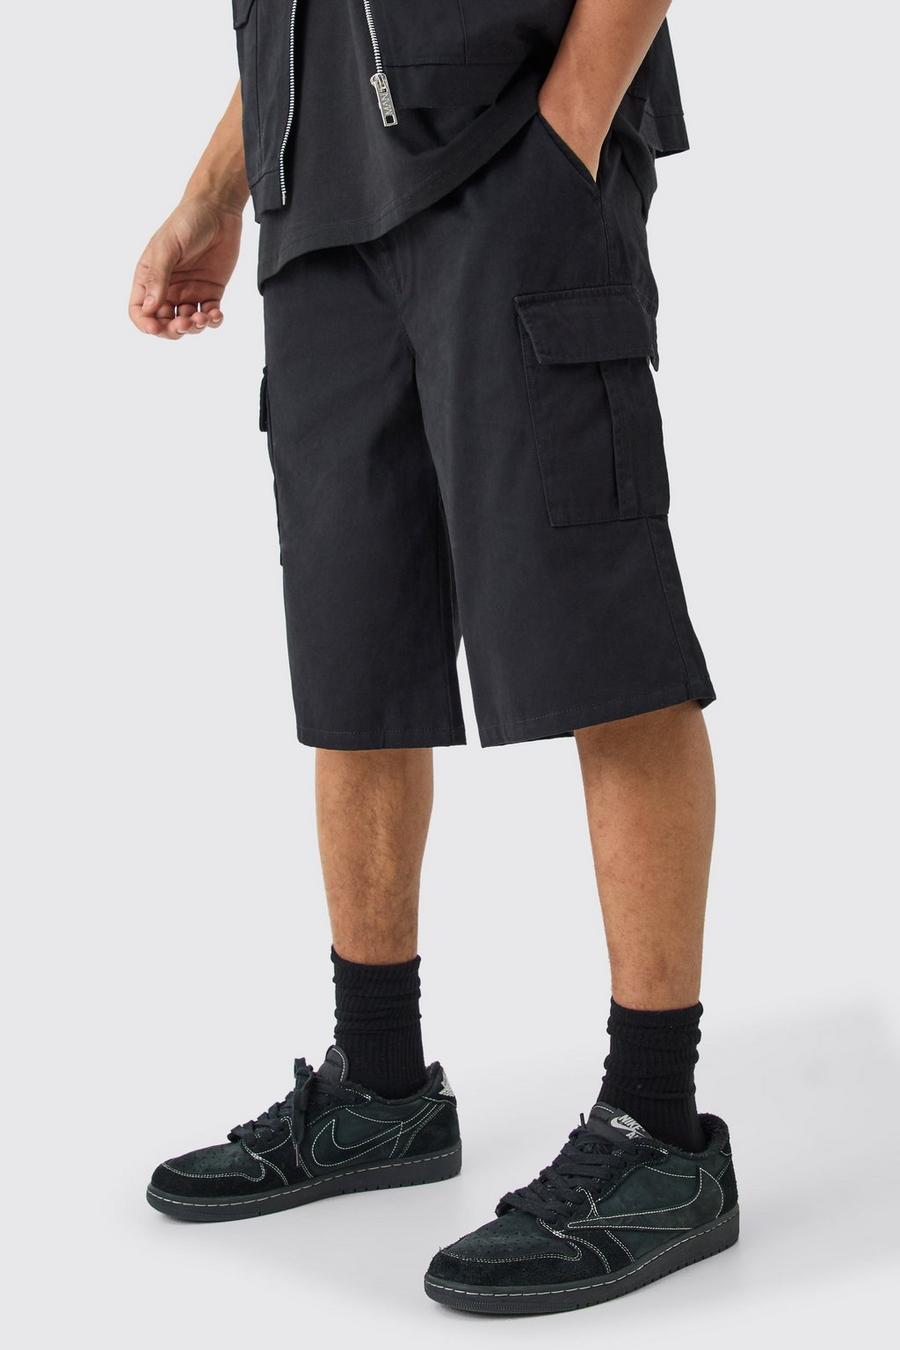 Lockere schwarze Cargo-Shorts mit elastischem Bund, Black